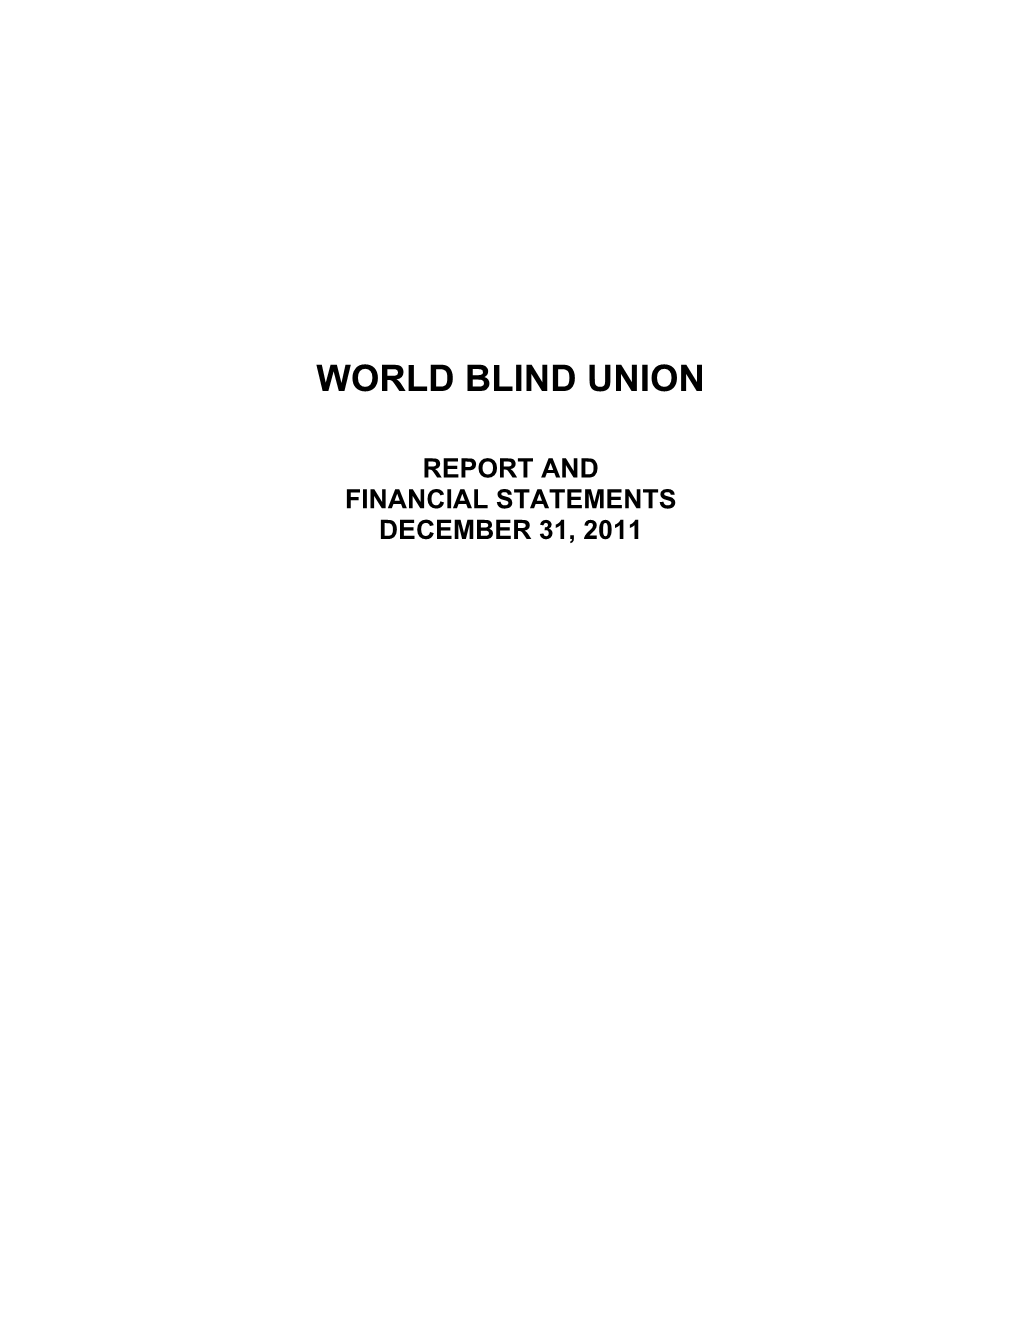 World Blind Union s2